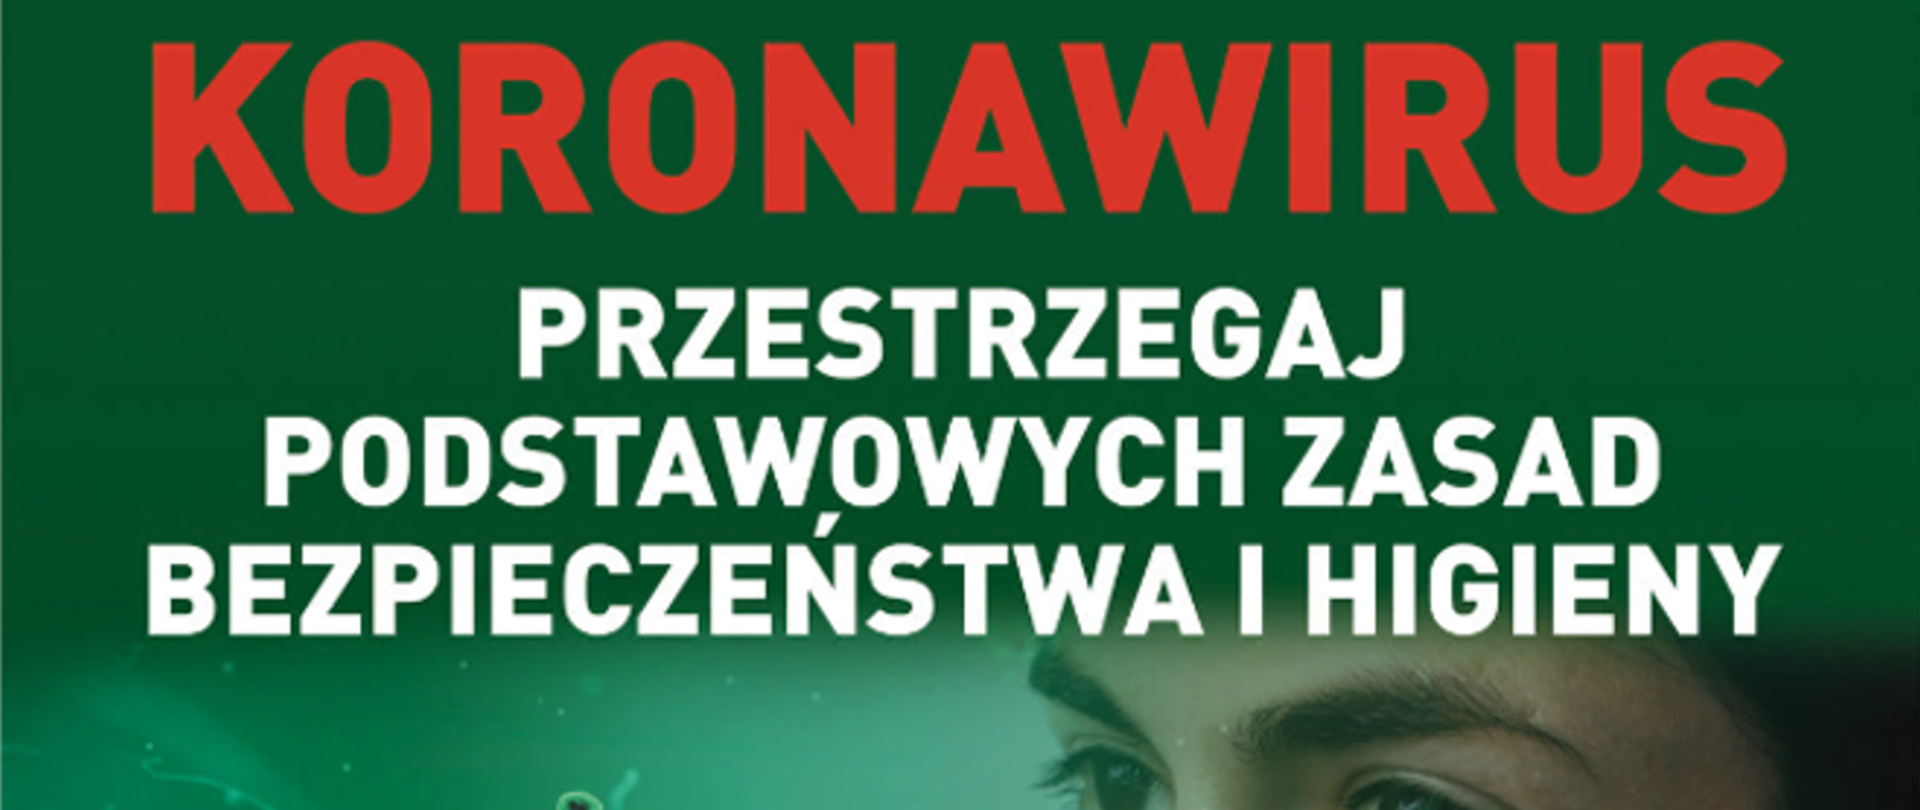 Plakat koronawirus, kobieta w maseczce 